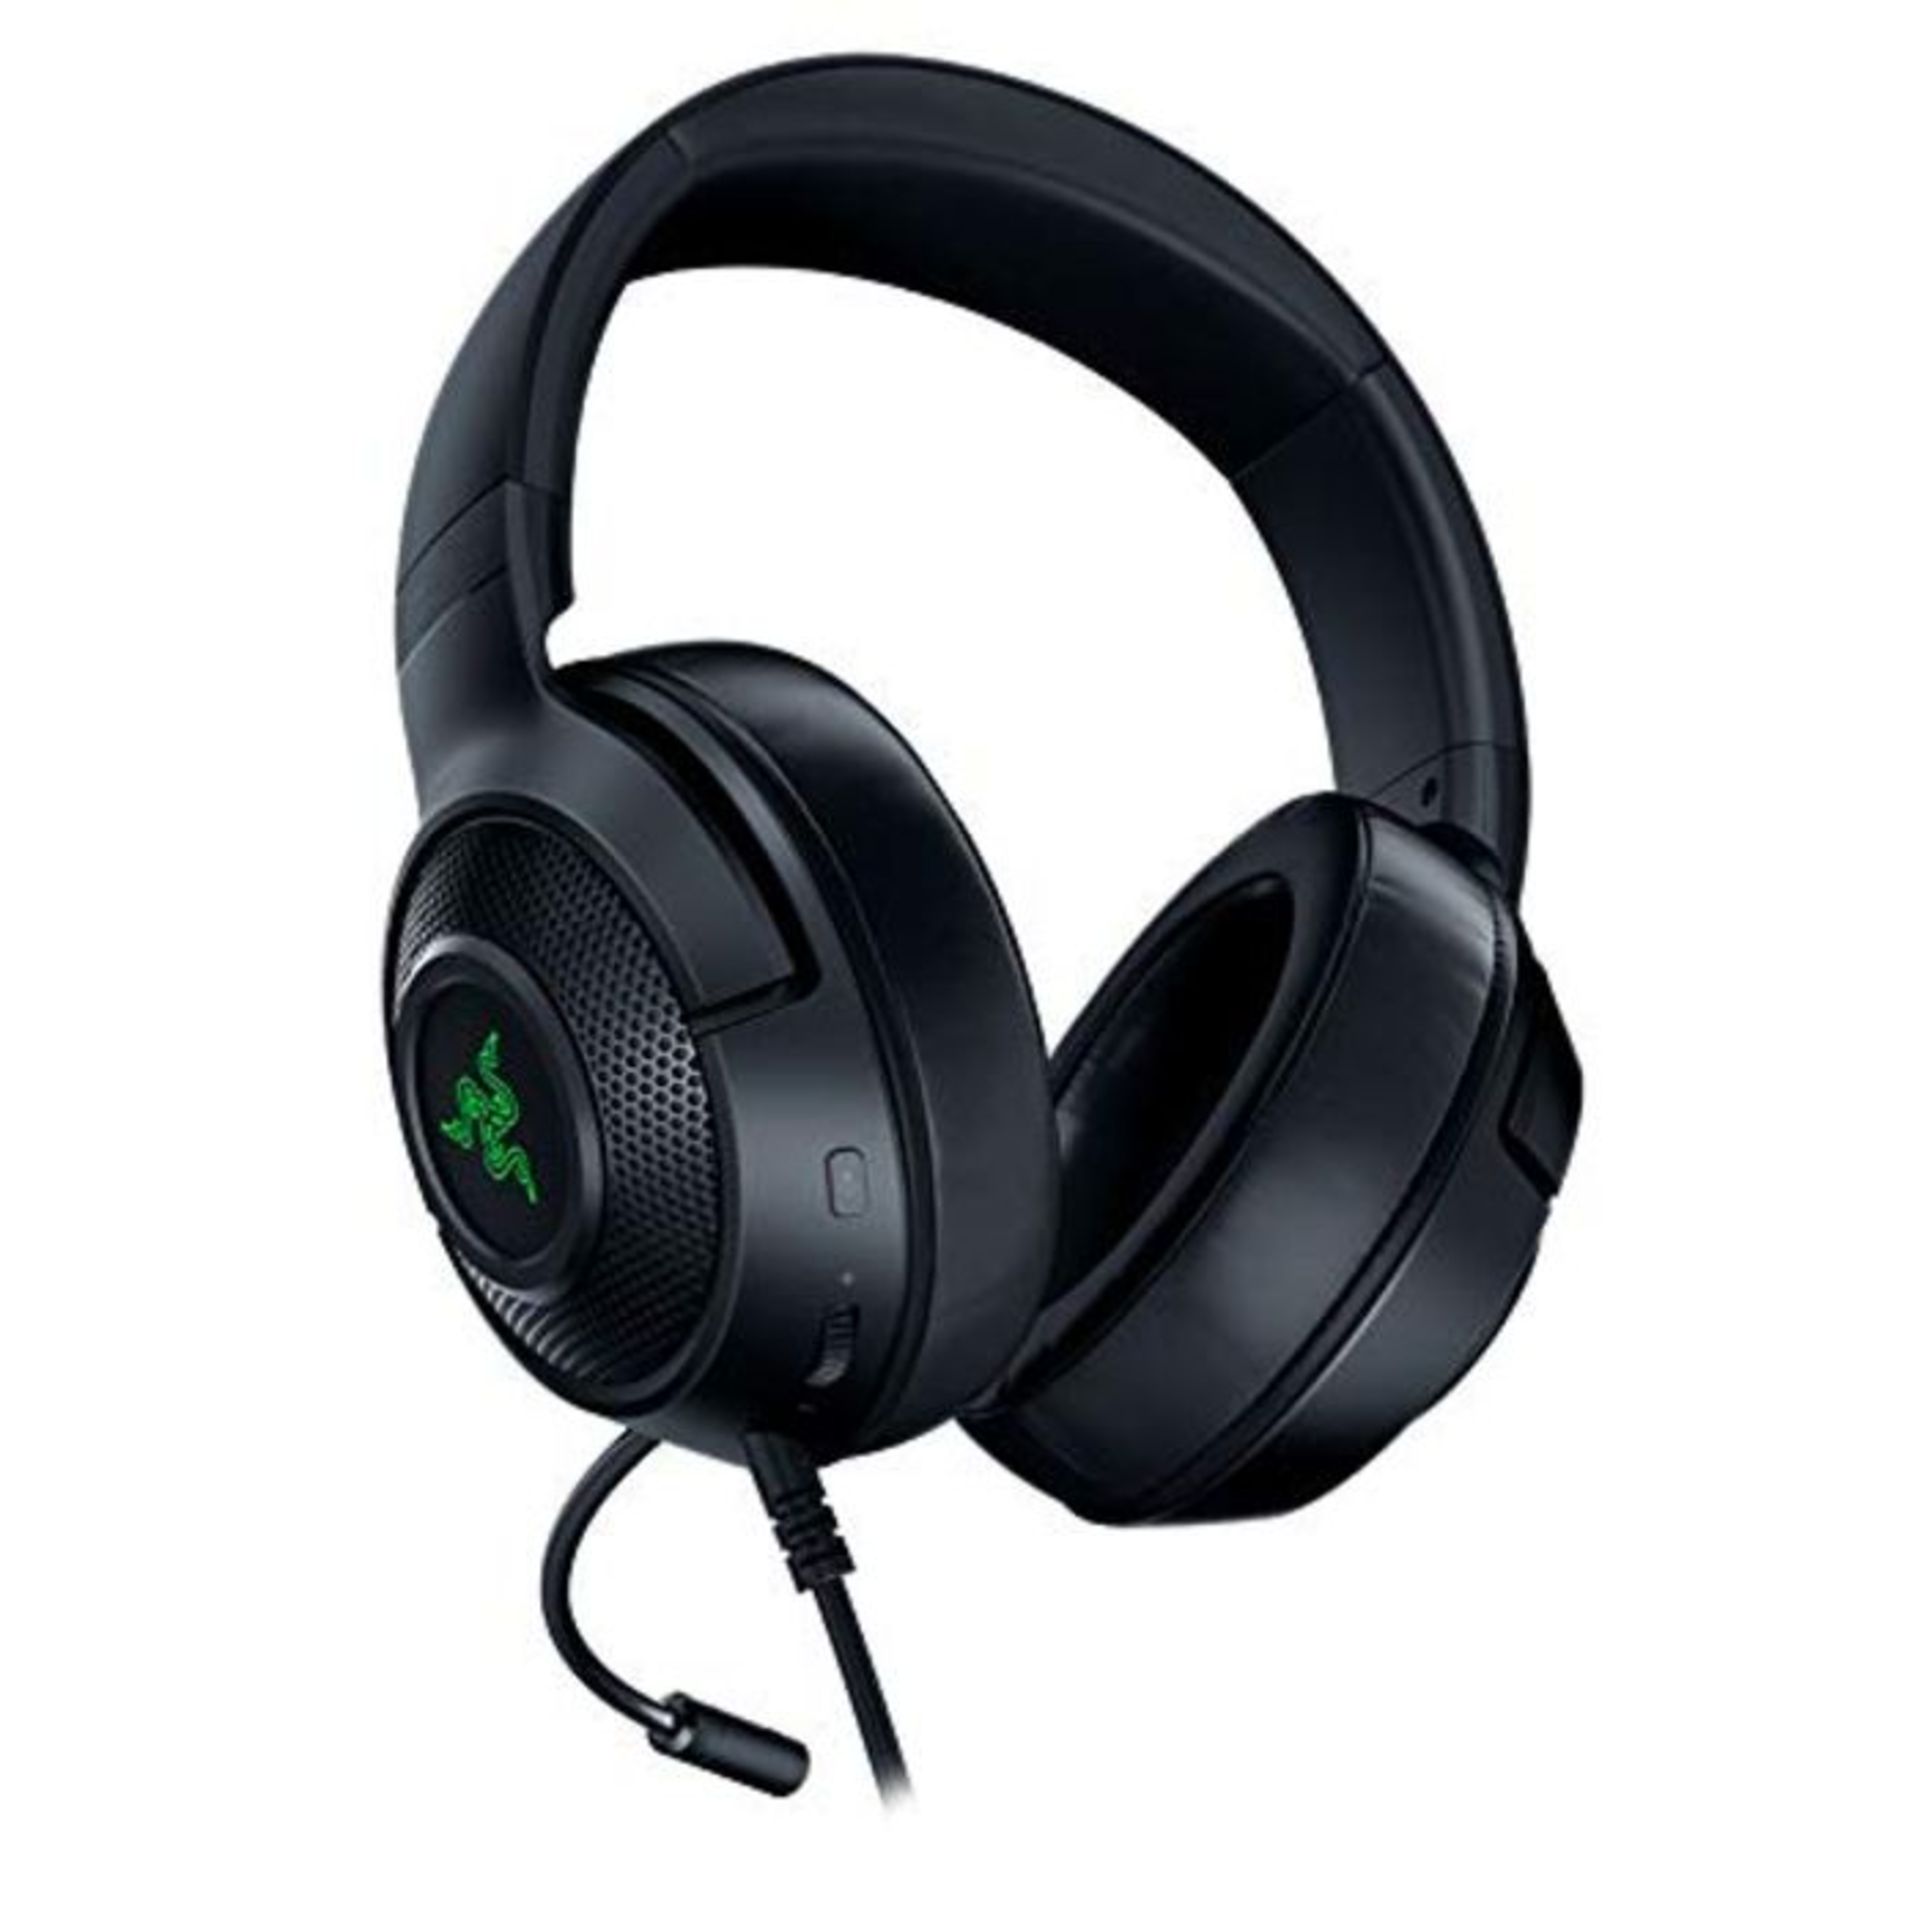 Razer Kraken X USB Gaming Headphones with Digital Surround Sound (7.1 Surround Sound,